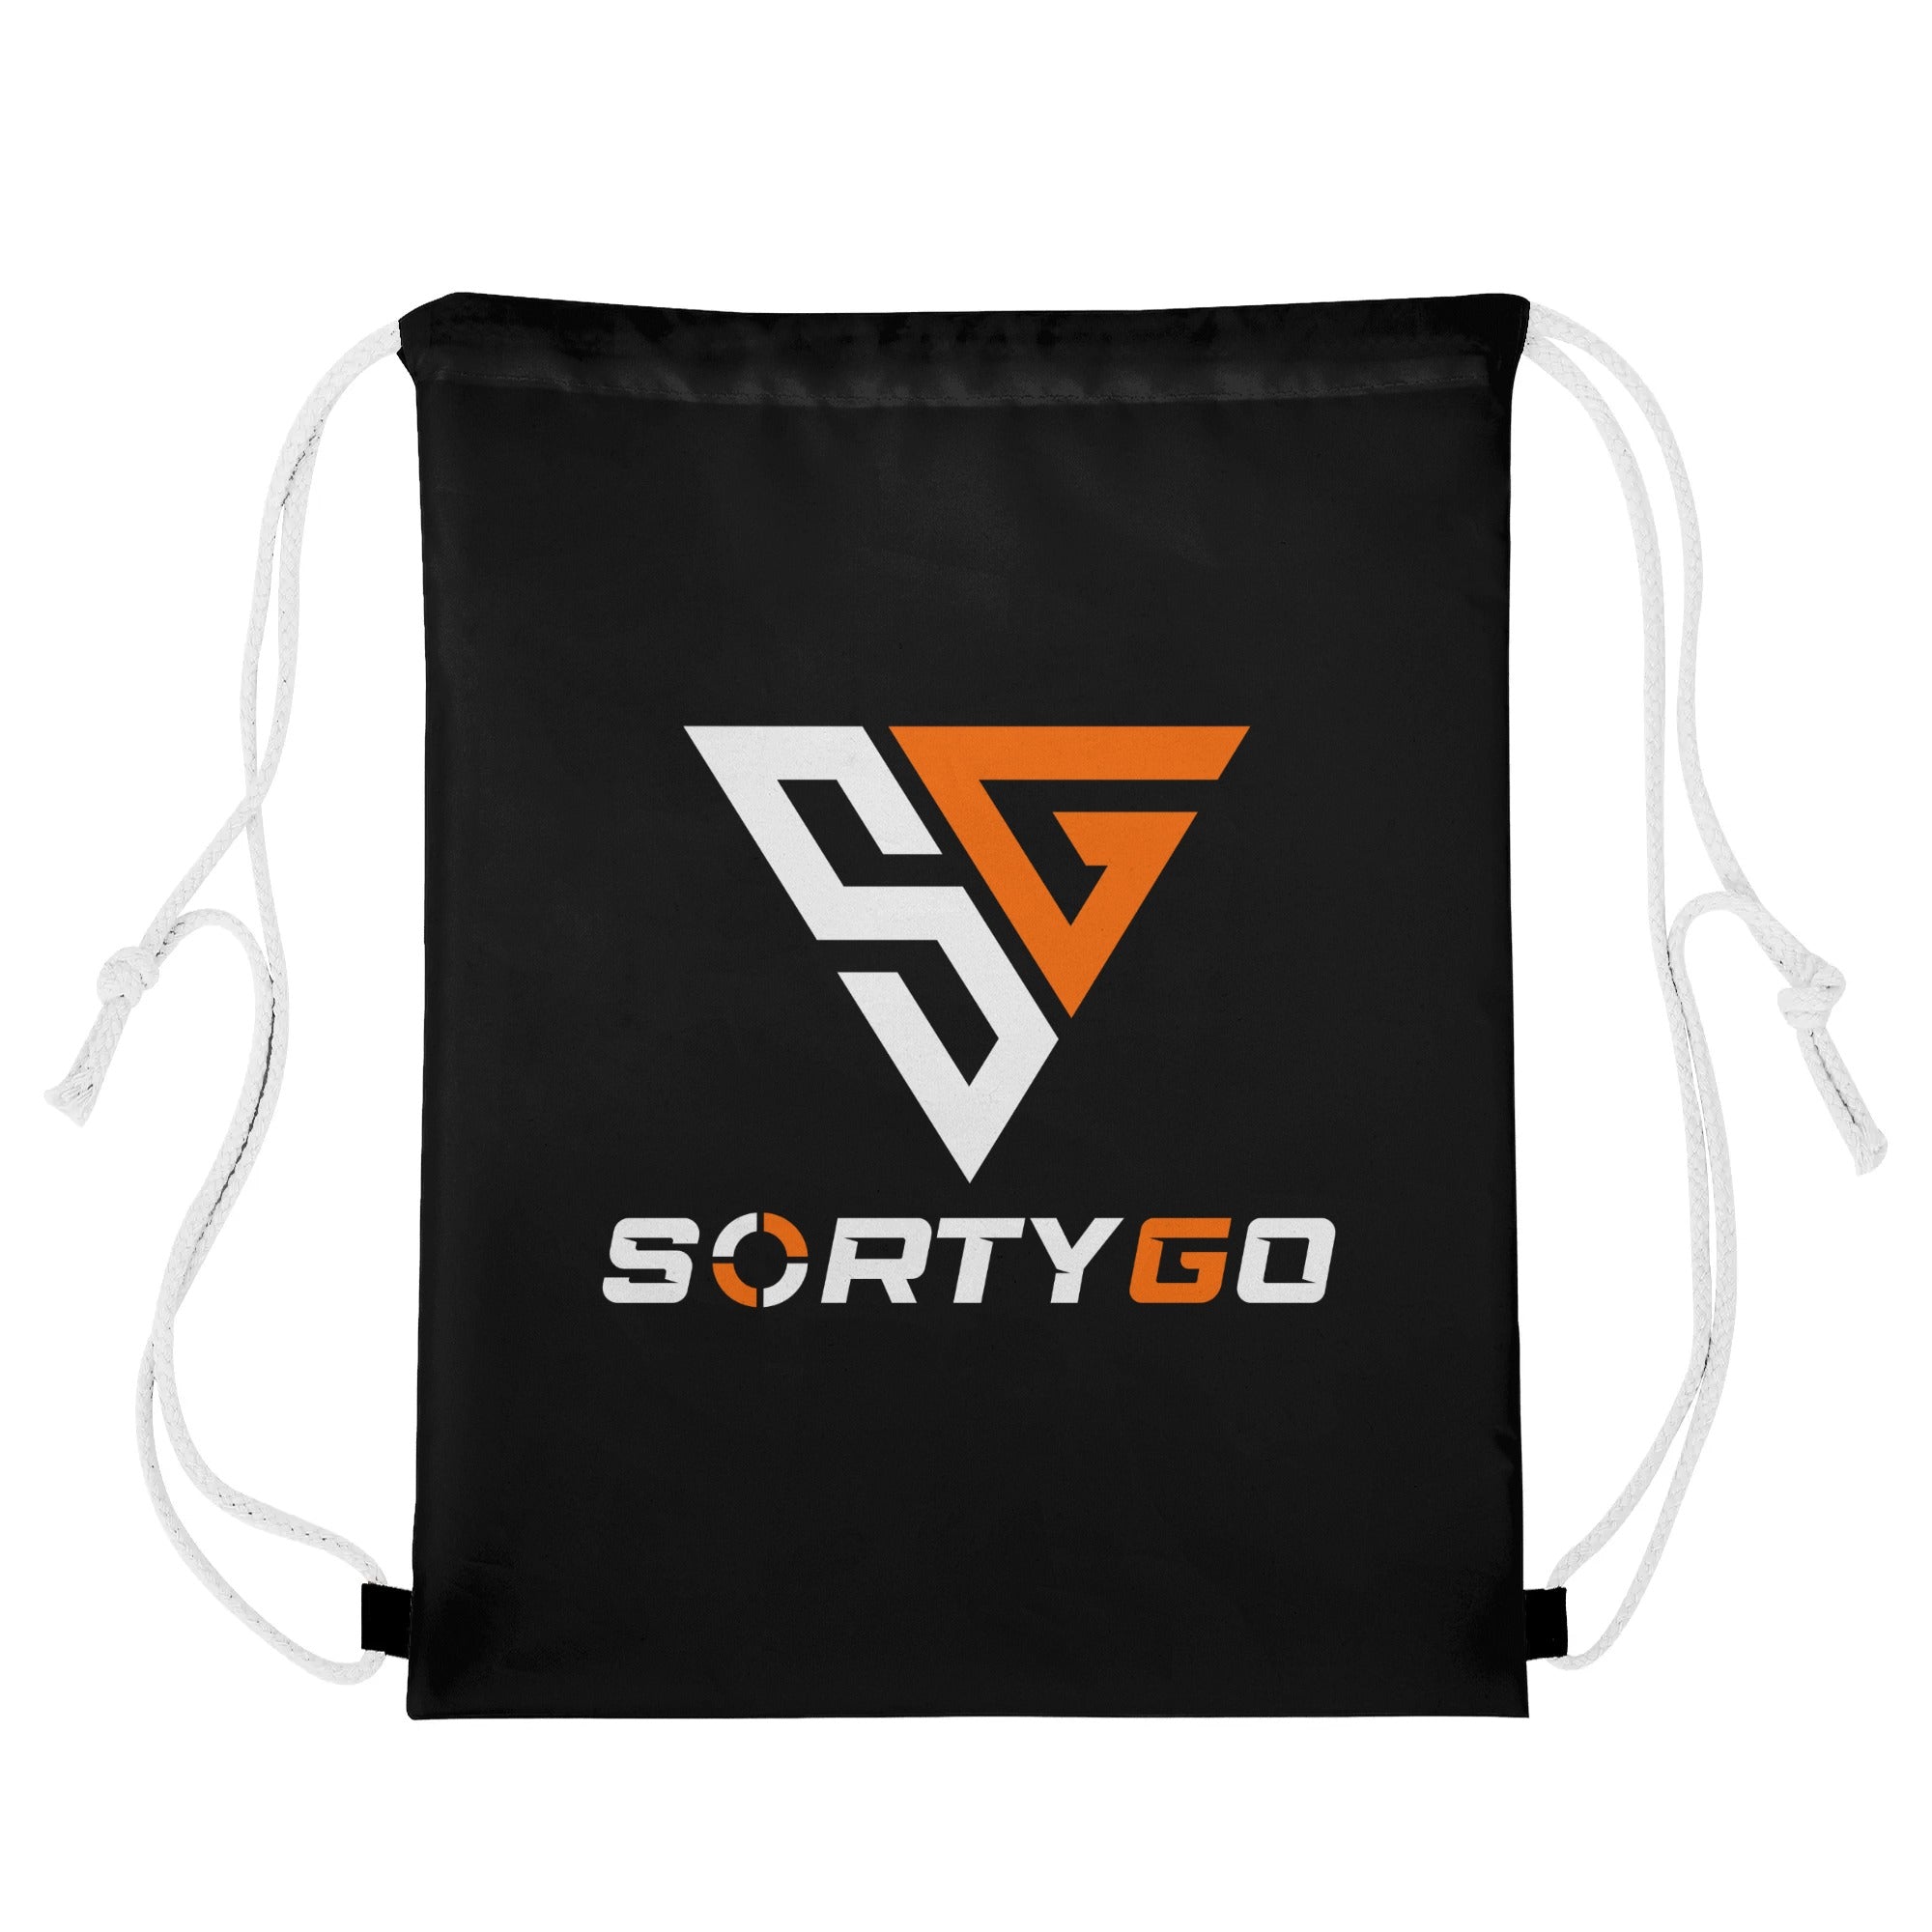 SORTYGO - Zigzag Drawstring Bag in